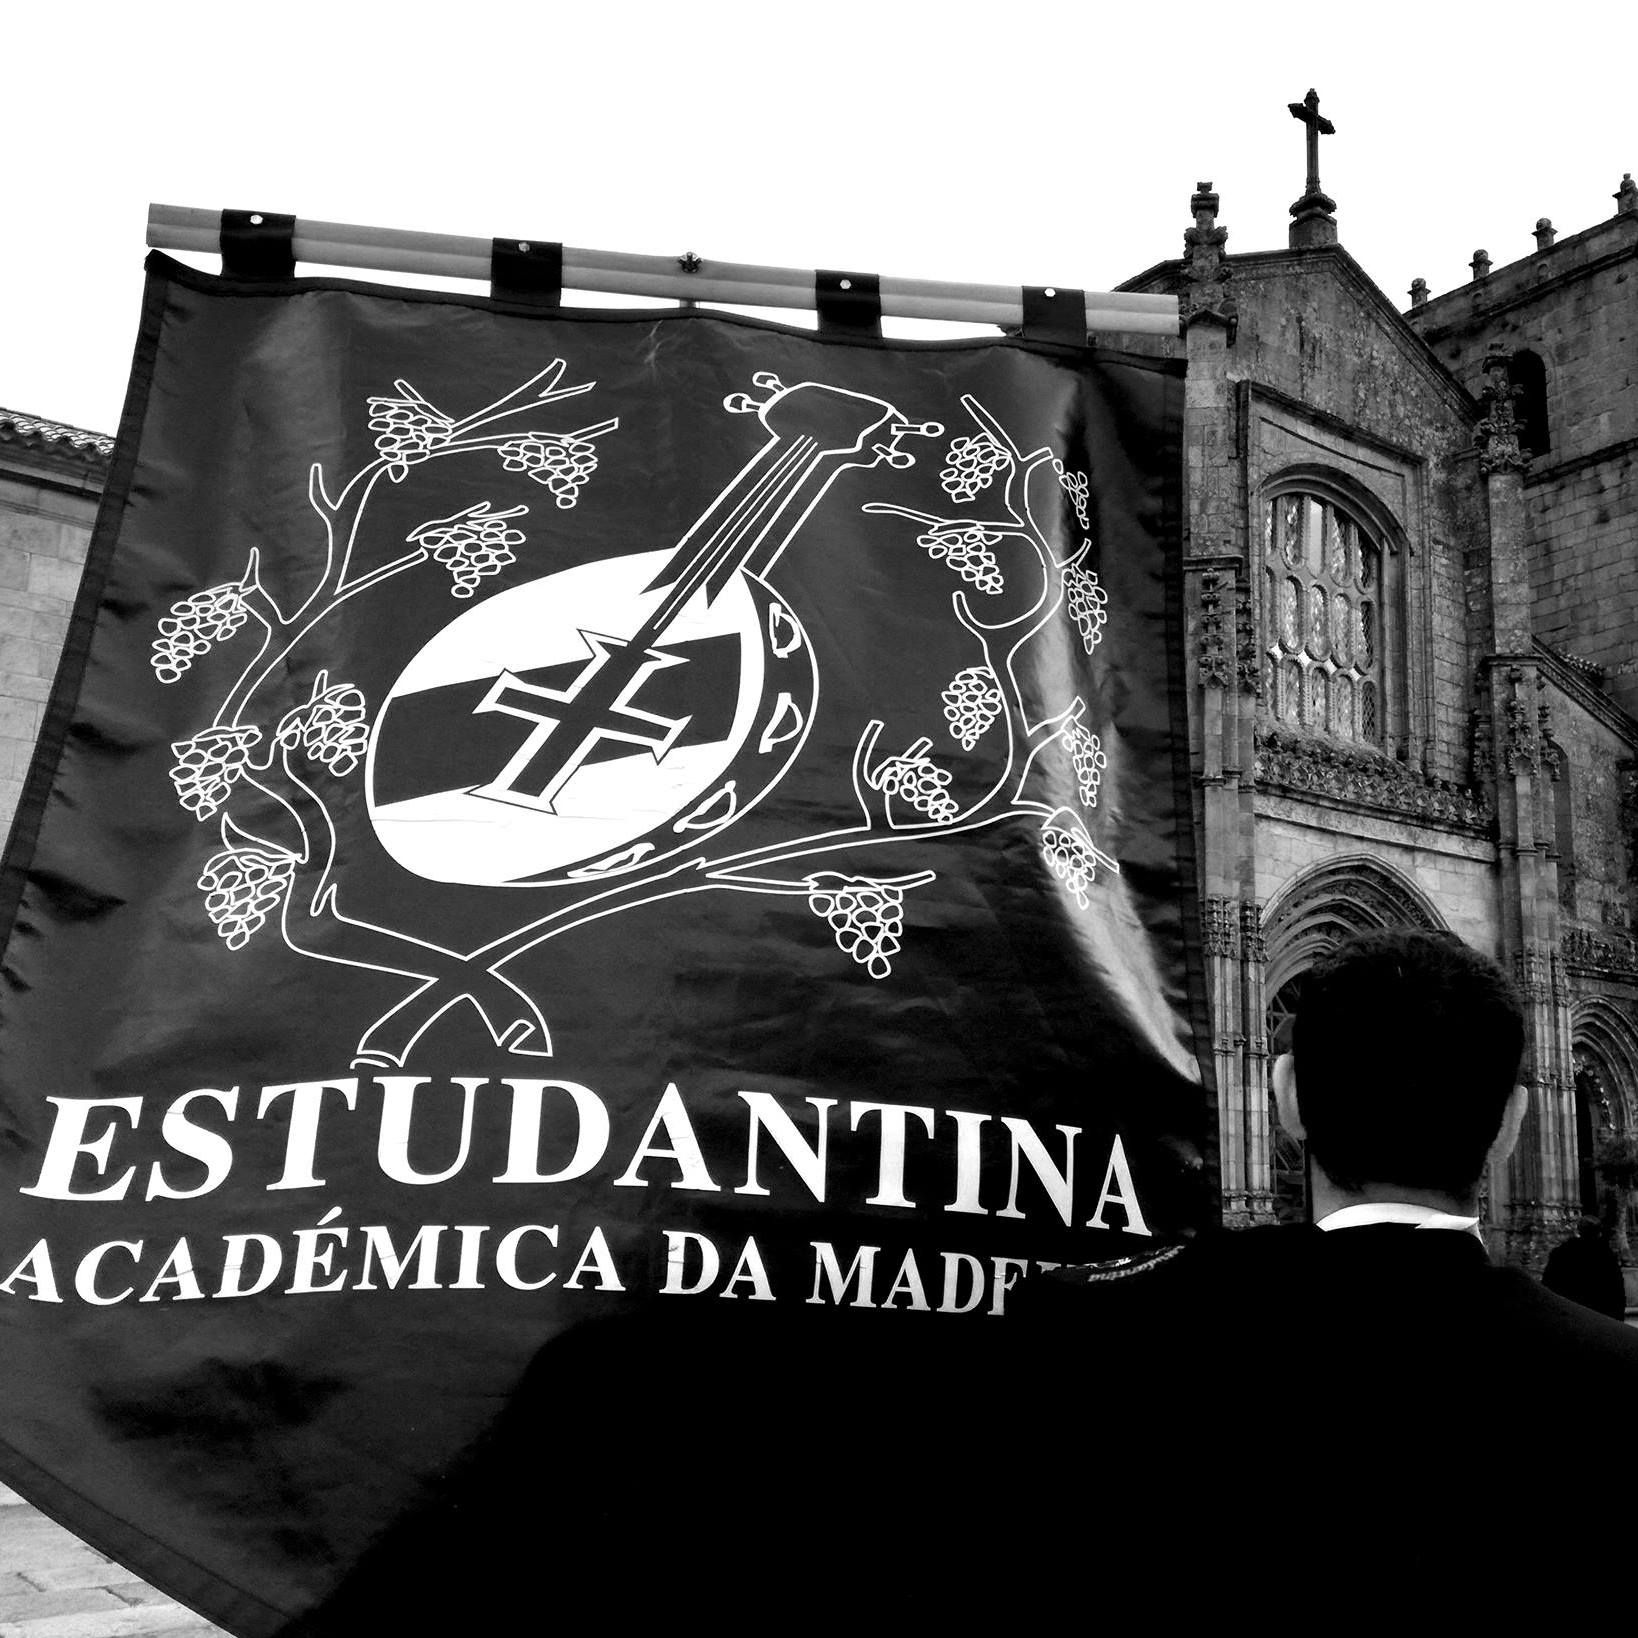 Estudantina Académica da Madeira